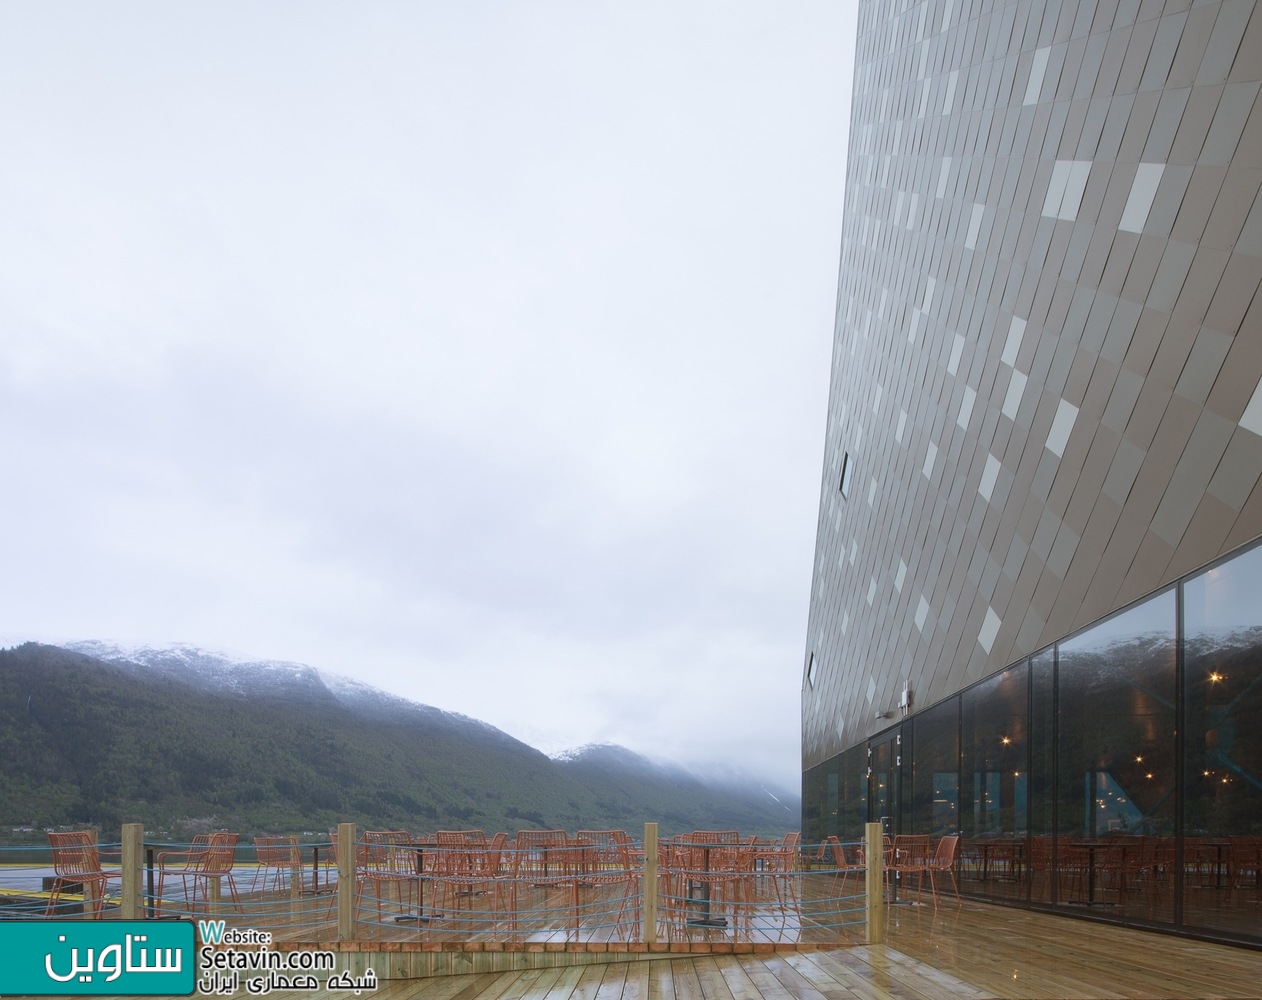 مرکز کوهنوردی , Norwegian , تیم طراحی , Reiulf Ramstad Architects , نروژ , کوهنوردی , Mountaineering Center , Reiulf Ramstad  , فضای ورزشی , آموزش کوهنوردی